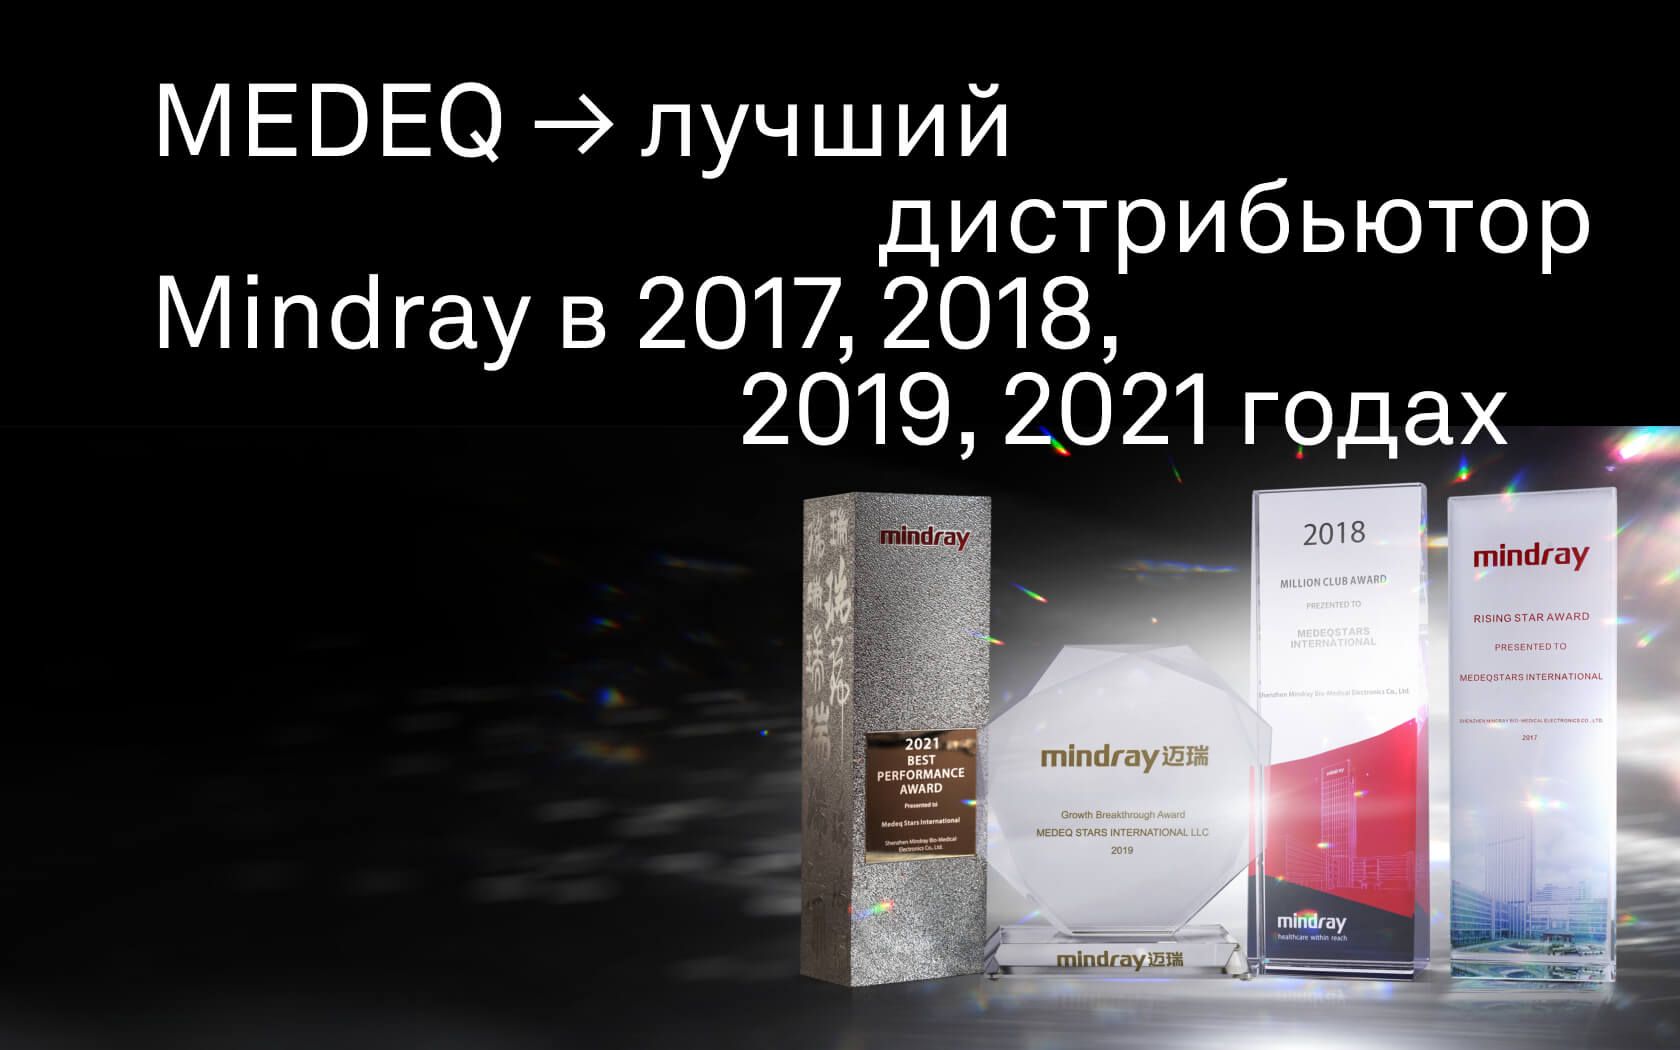 По итогам 2021 года компания MEDEQ стала лучшим дистрибьютором Mindray и получила премию «Best Performance Award»